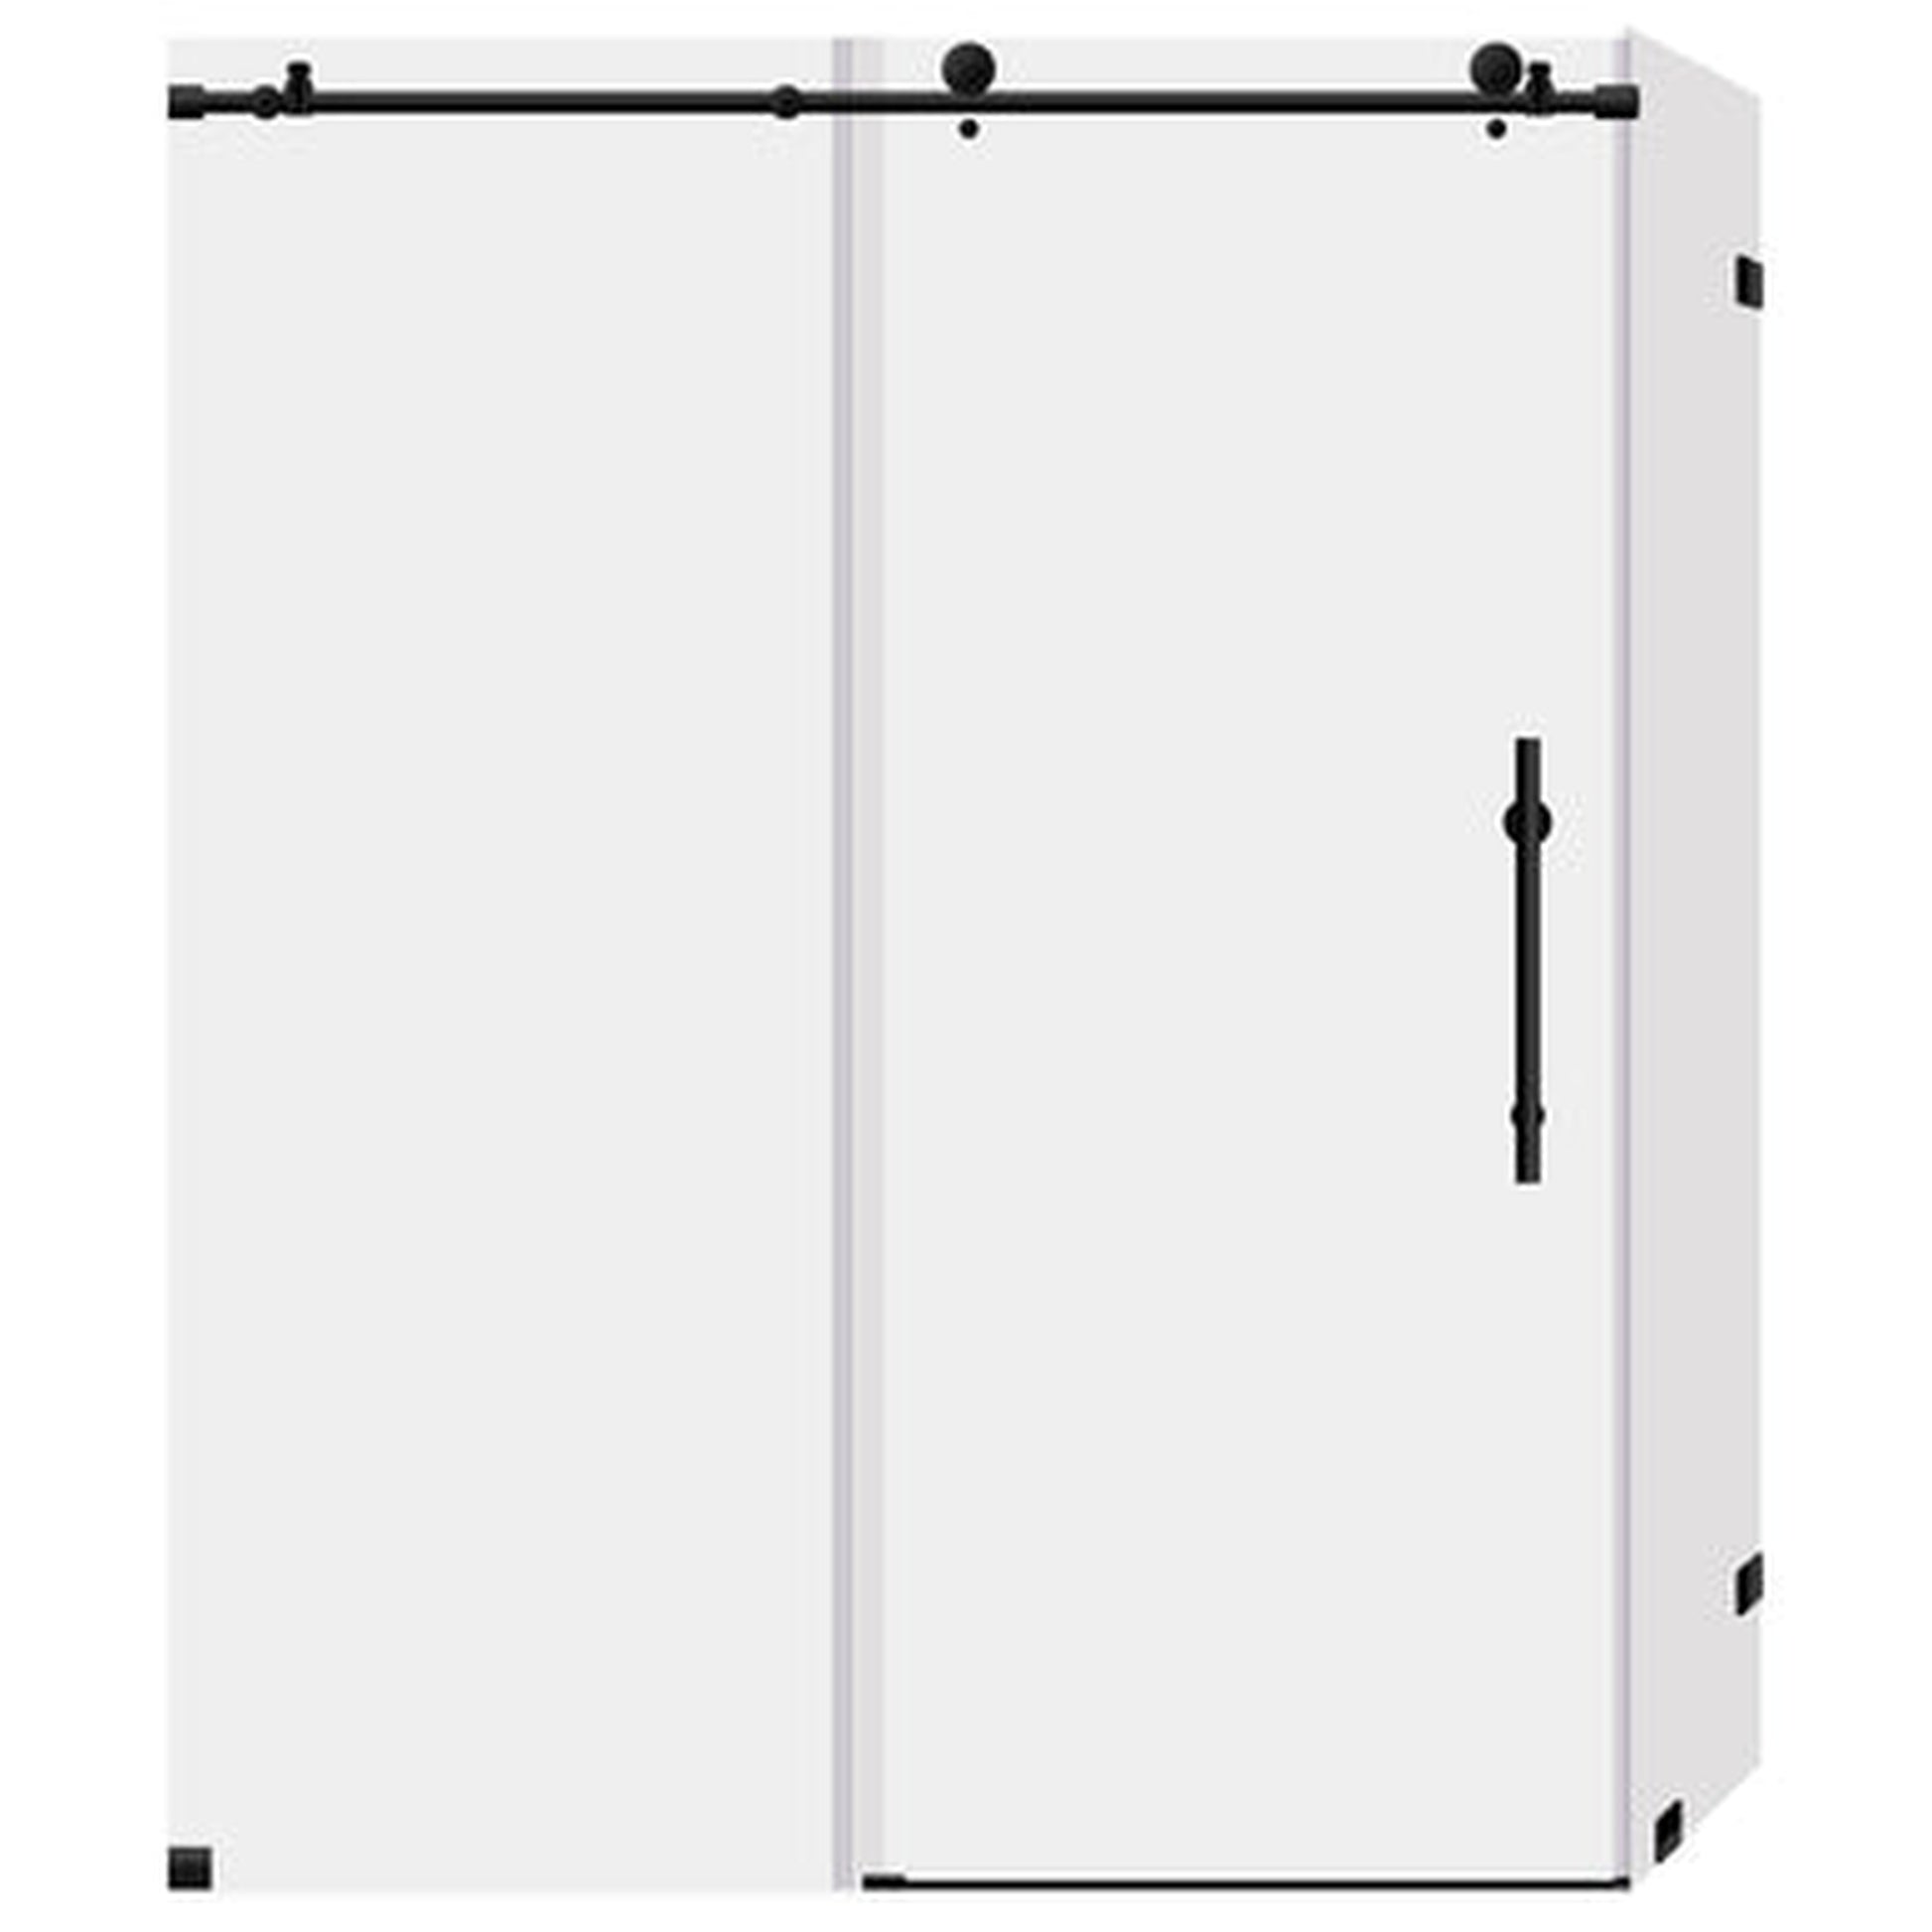 LessCare Ultra-C 44-48" x 76" x 36" Matte Black Sliding Shower Enclosure